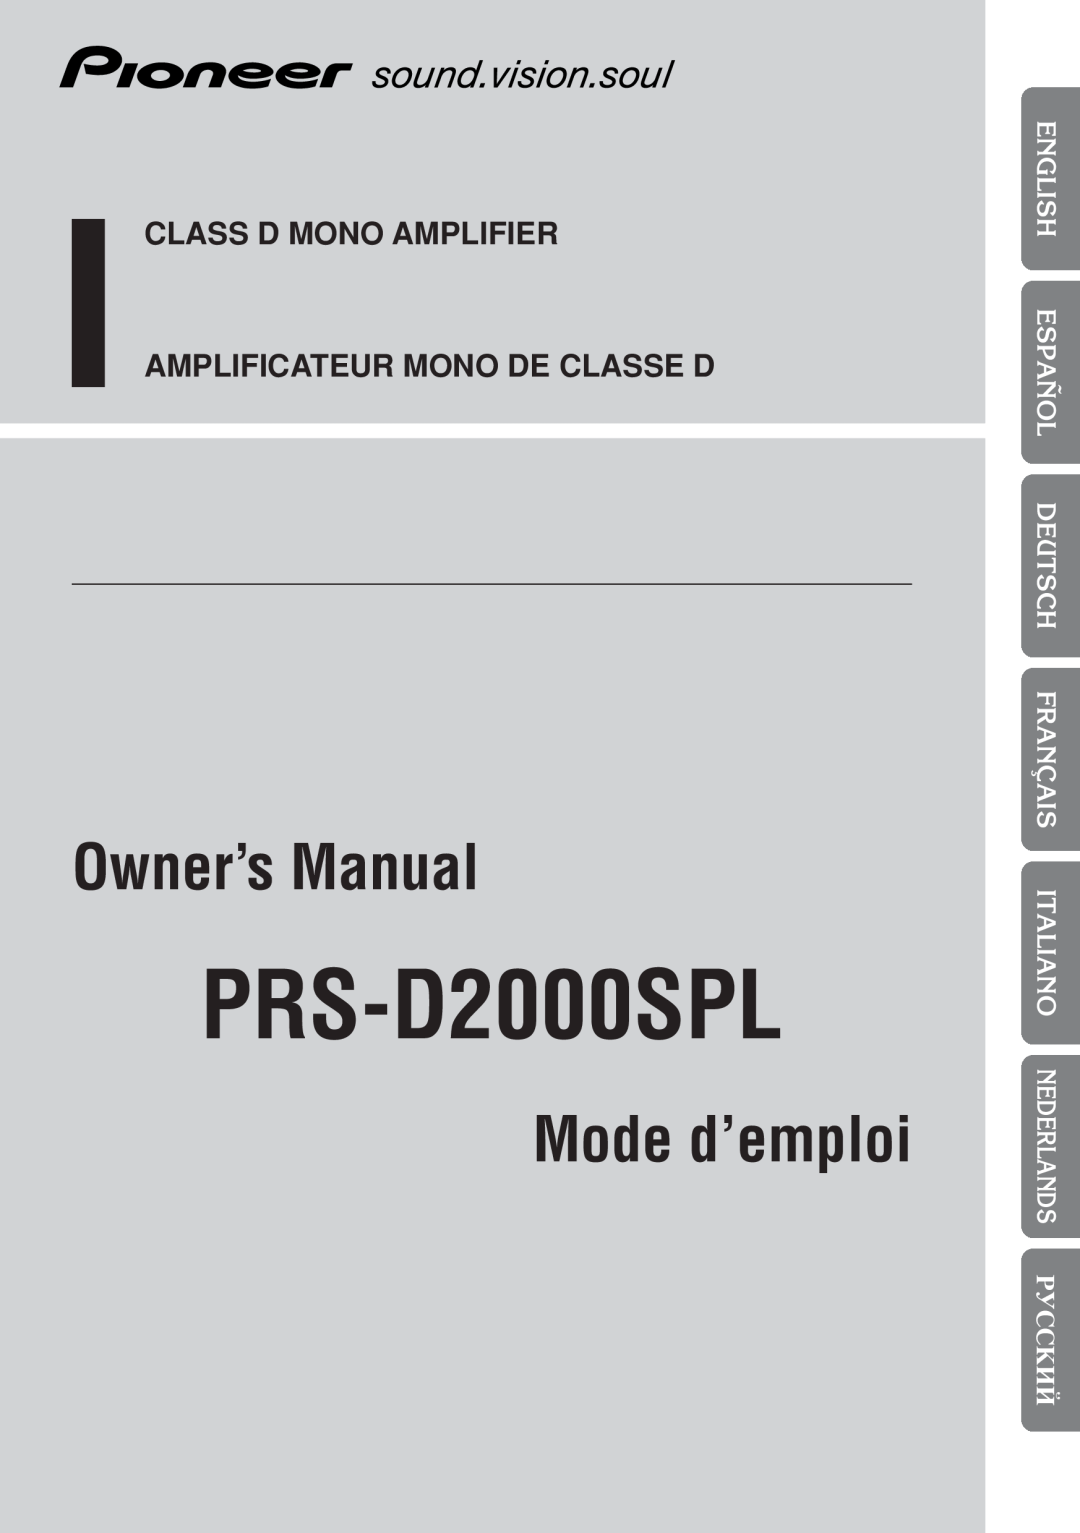 Pioneer owner manual êìëëäàâ, PRS-D2000SPL, Mode d’emploi, Class D Mono Amplifier, Amplificateur Mono De Classe D 